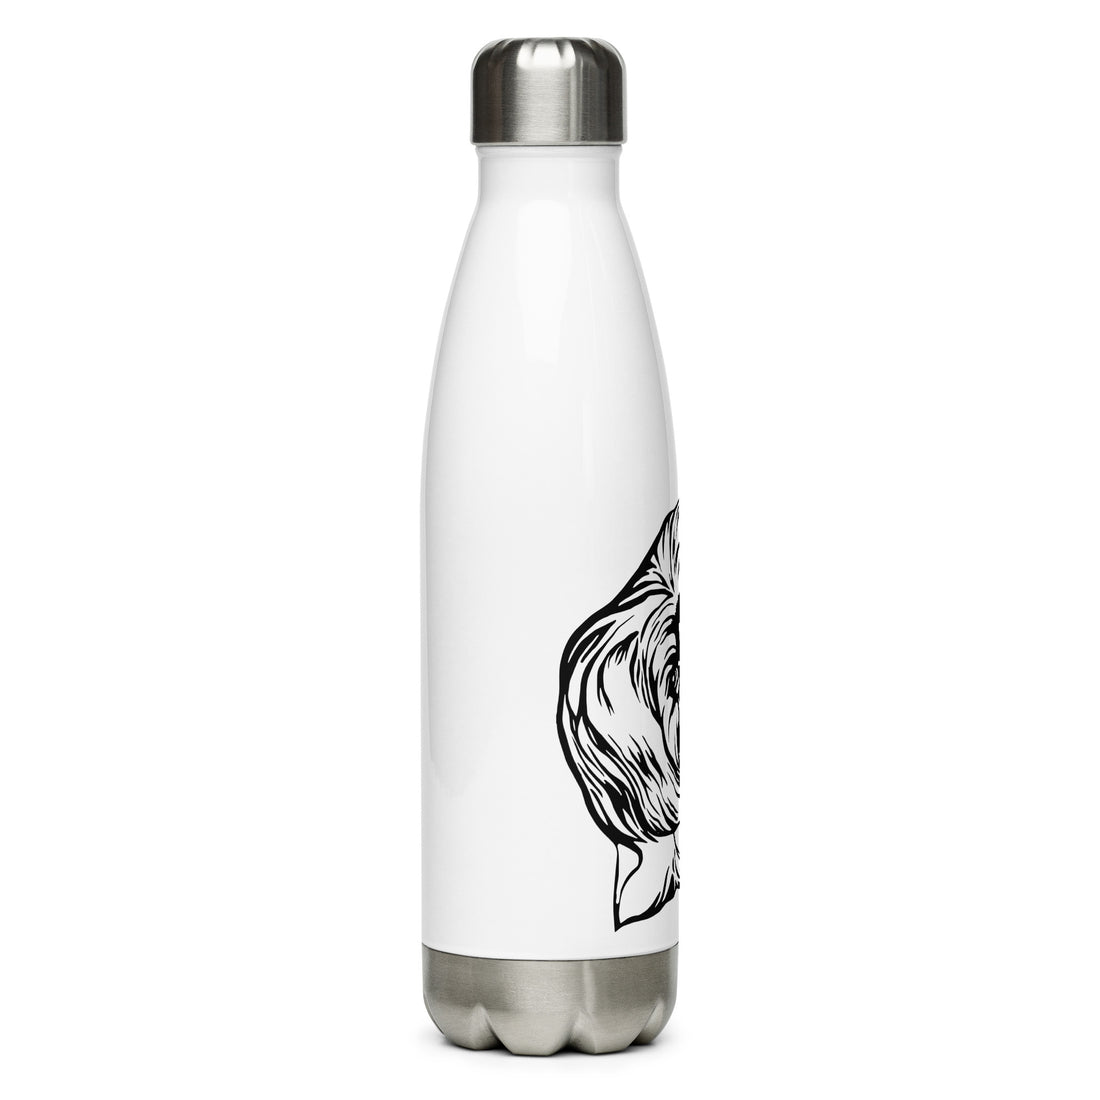 Stainless steel water bottle Malteser